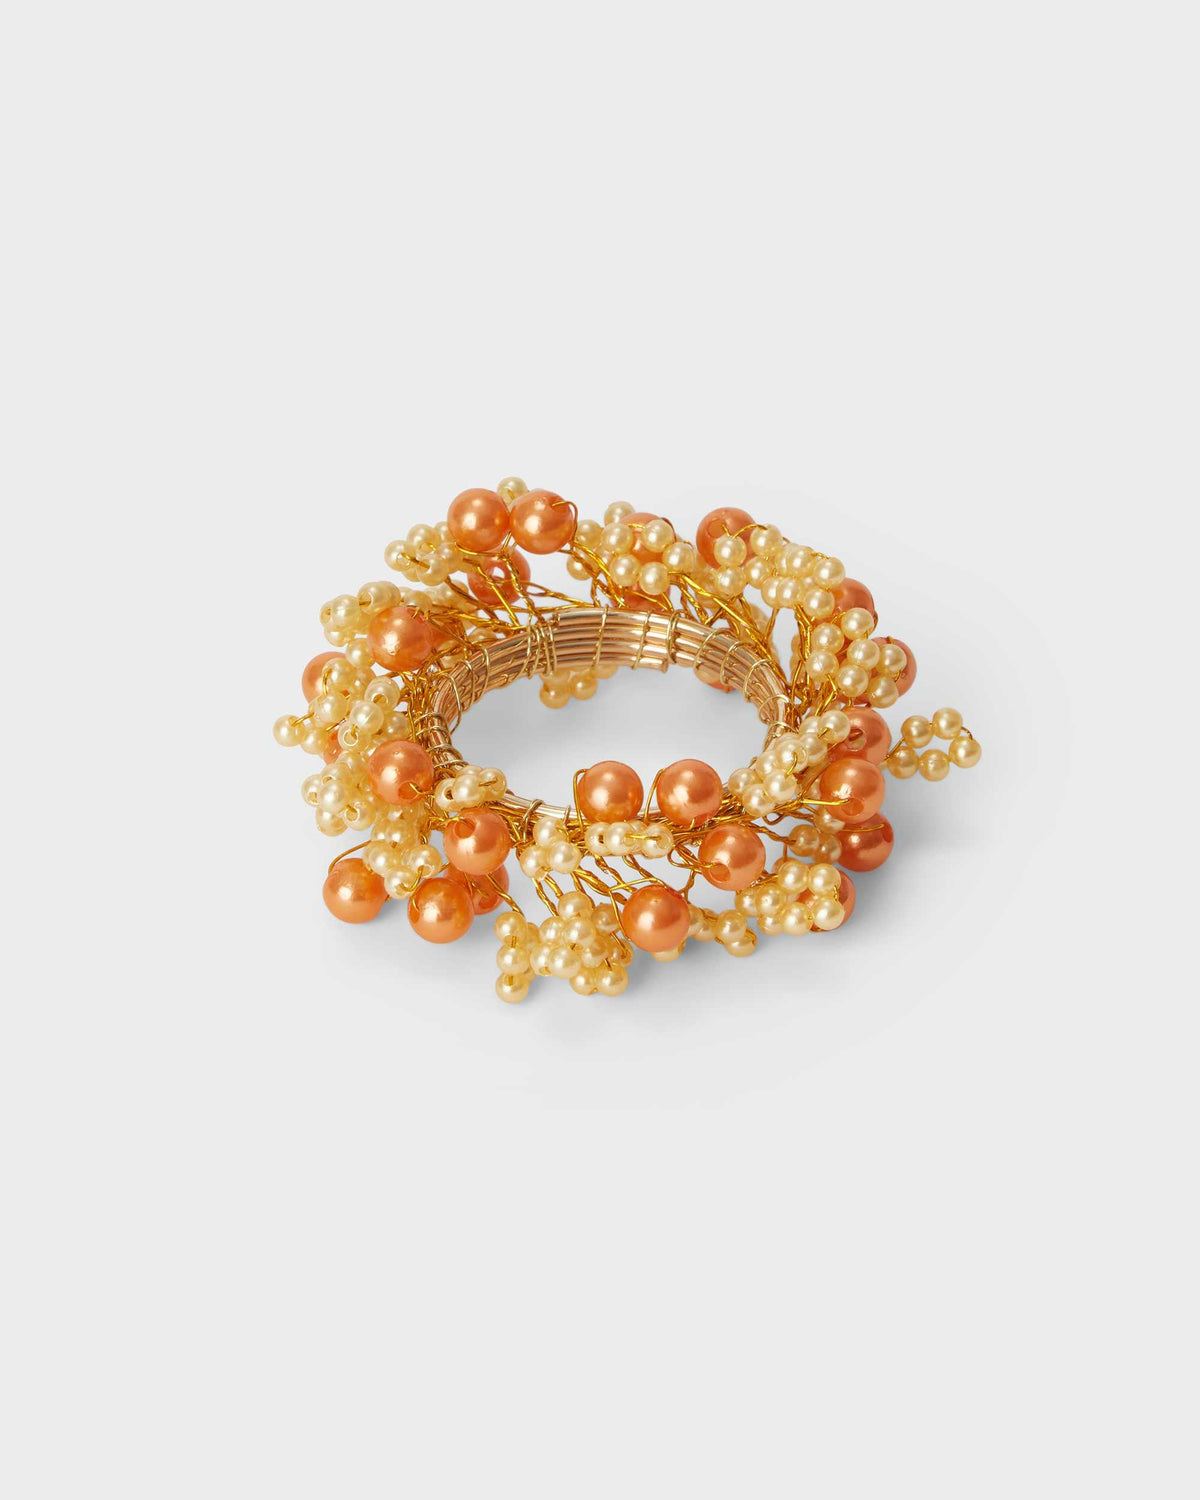 Napkin Ring - Gold beads - Von Home